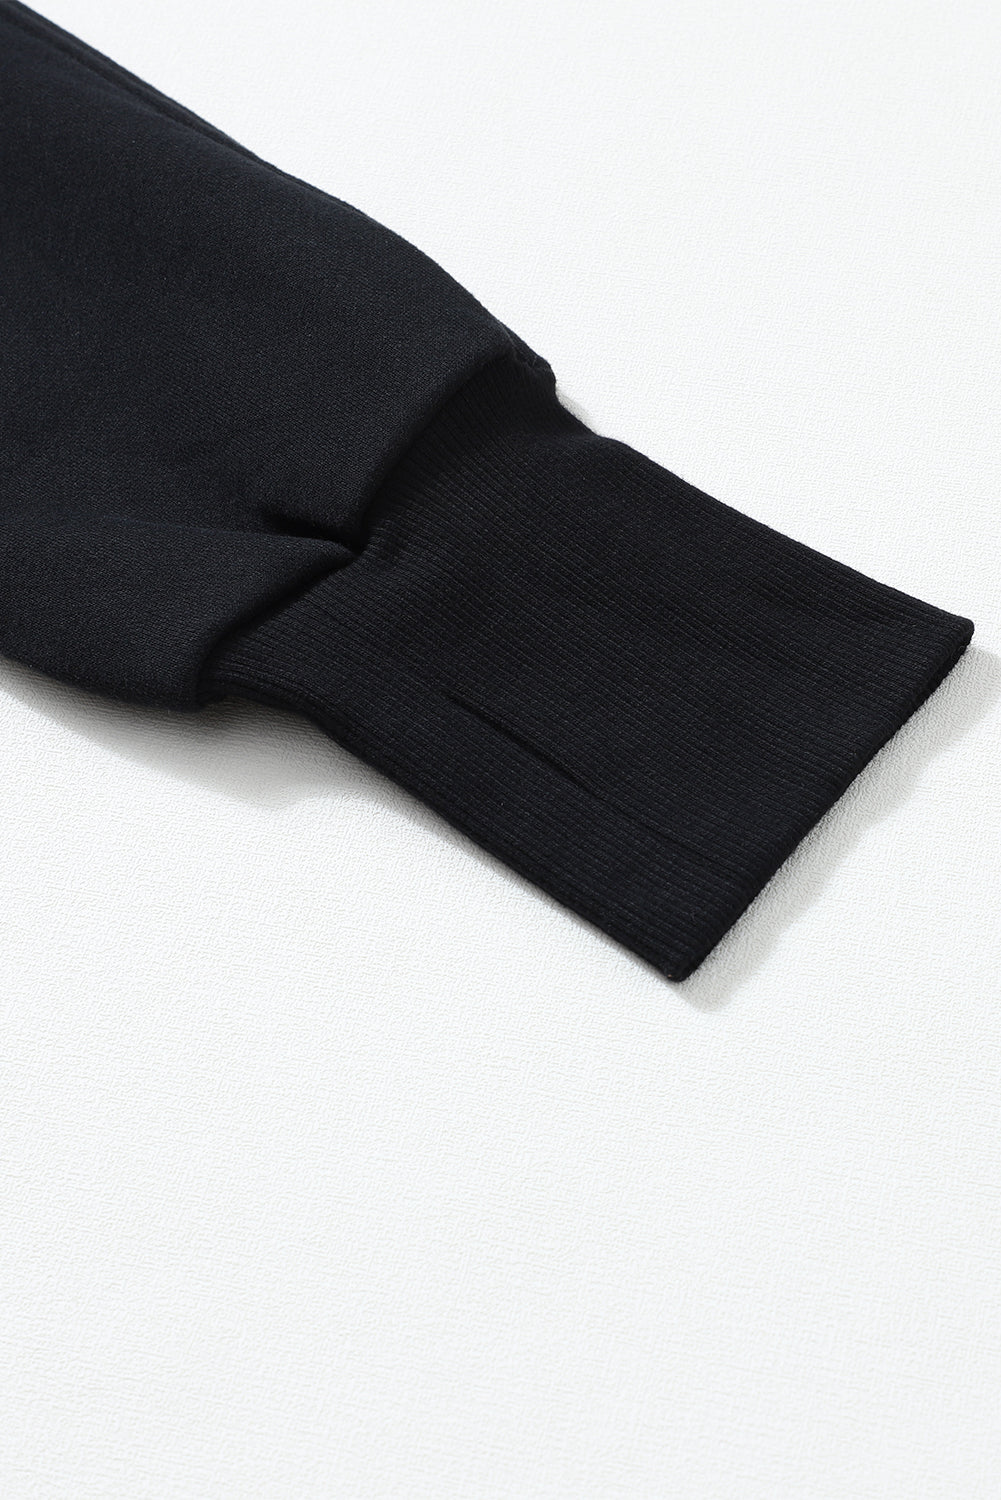 Crna majica s rebrastim rukavima i rupicama za prste s patentnim zatvaračem